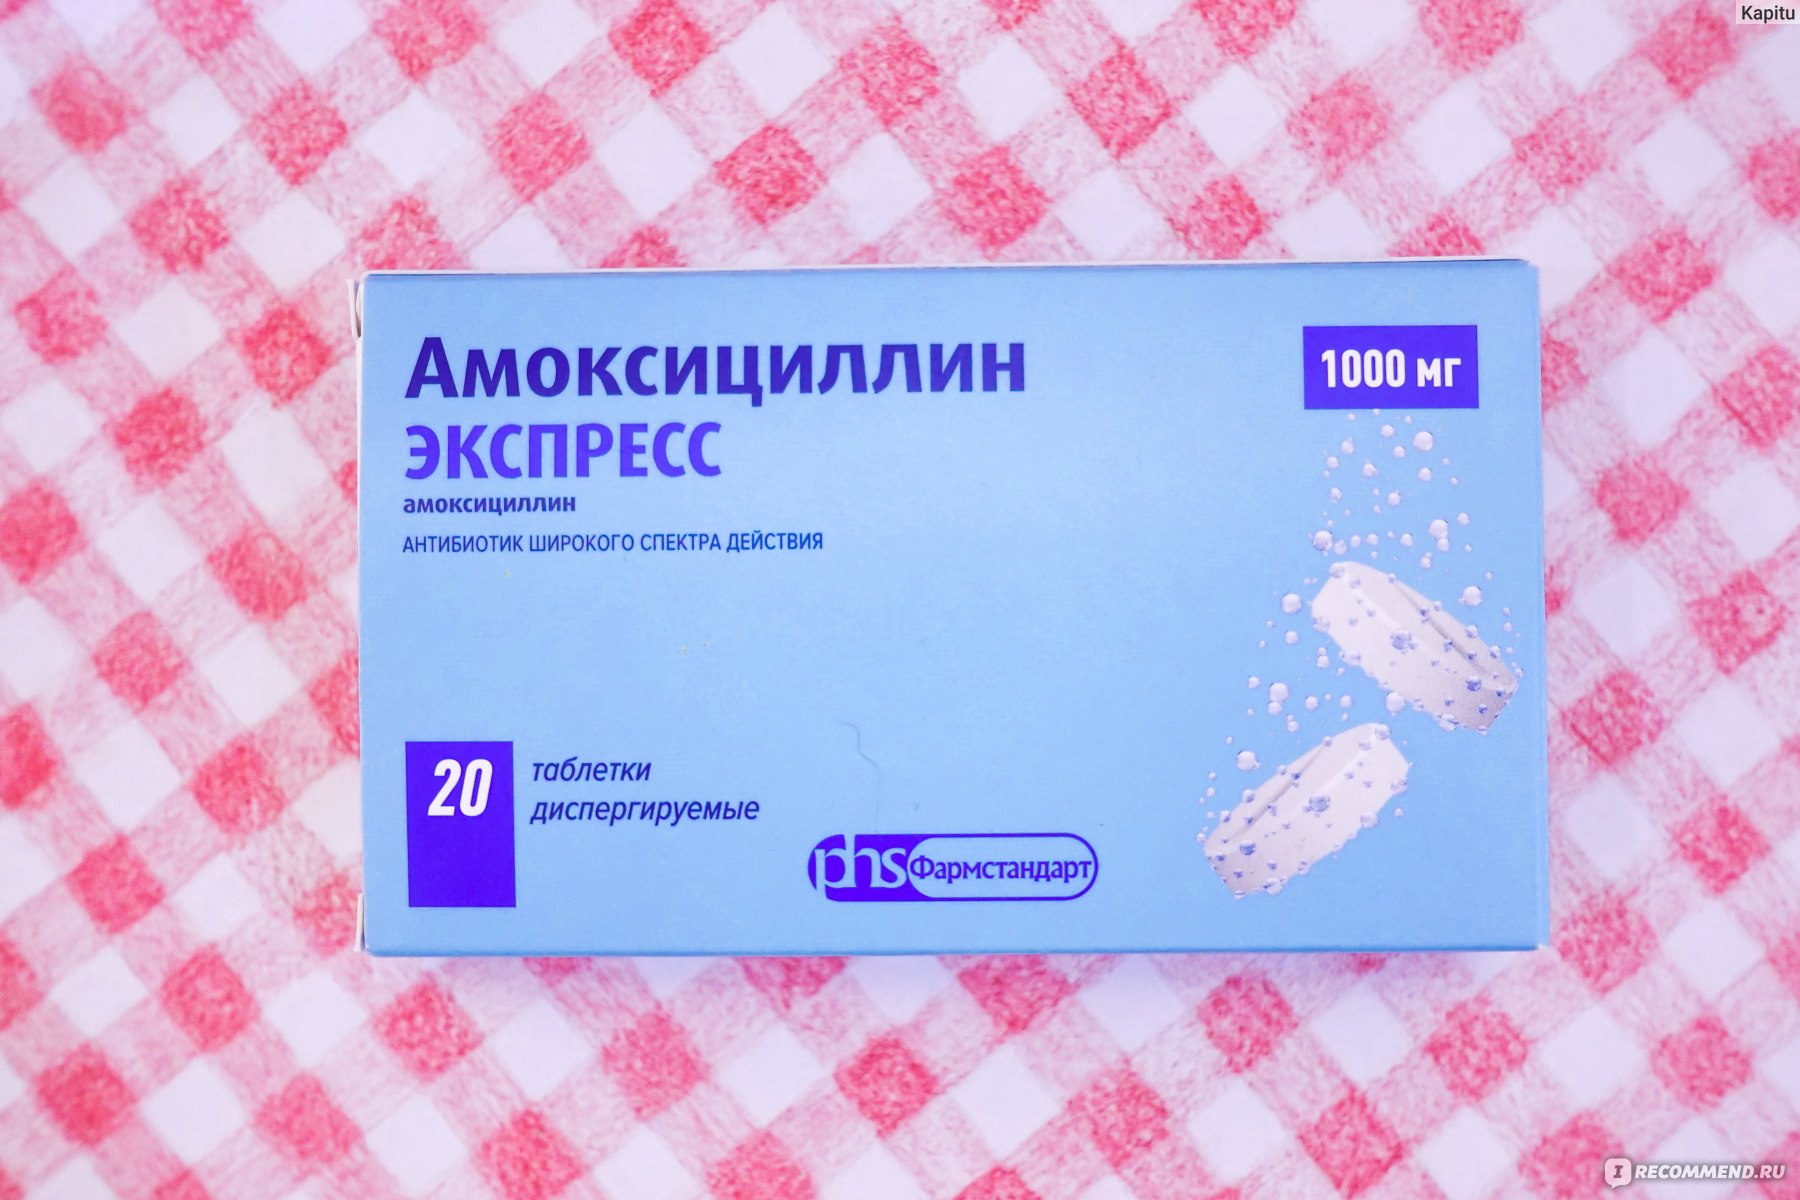 Se puede comprar amoxicilina sin receta en españa